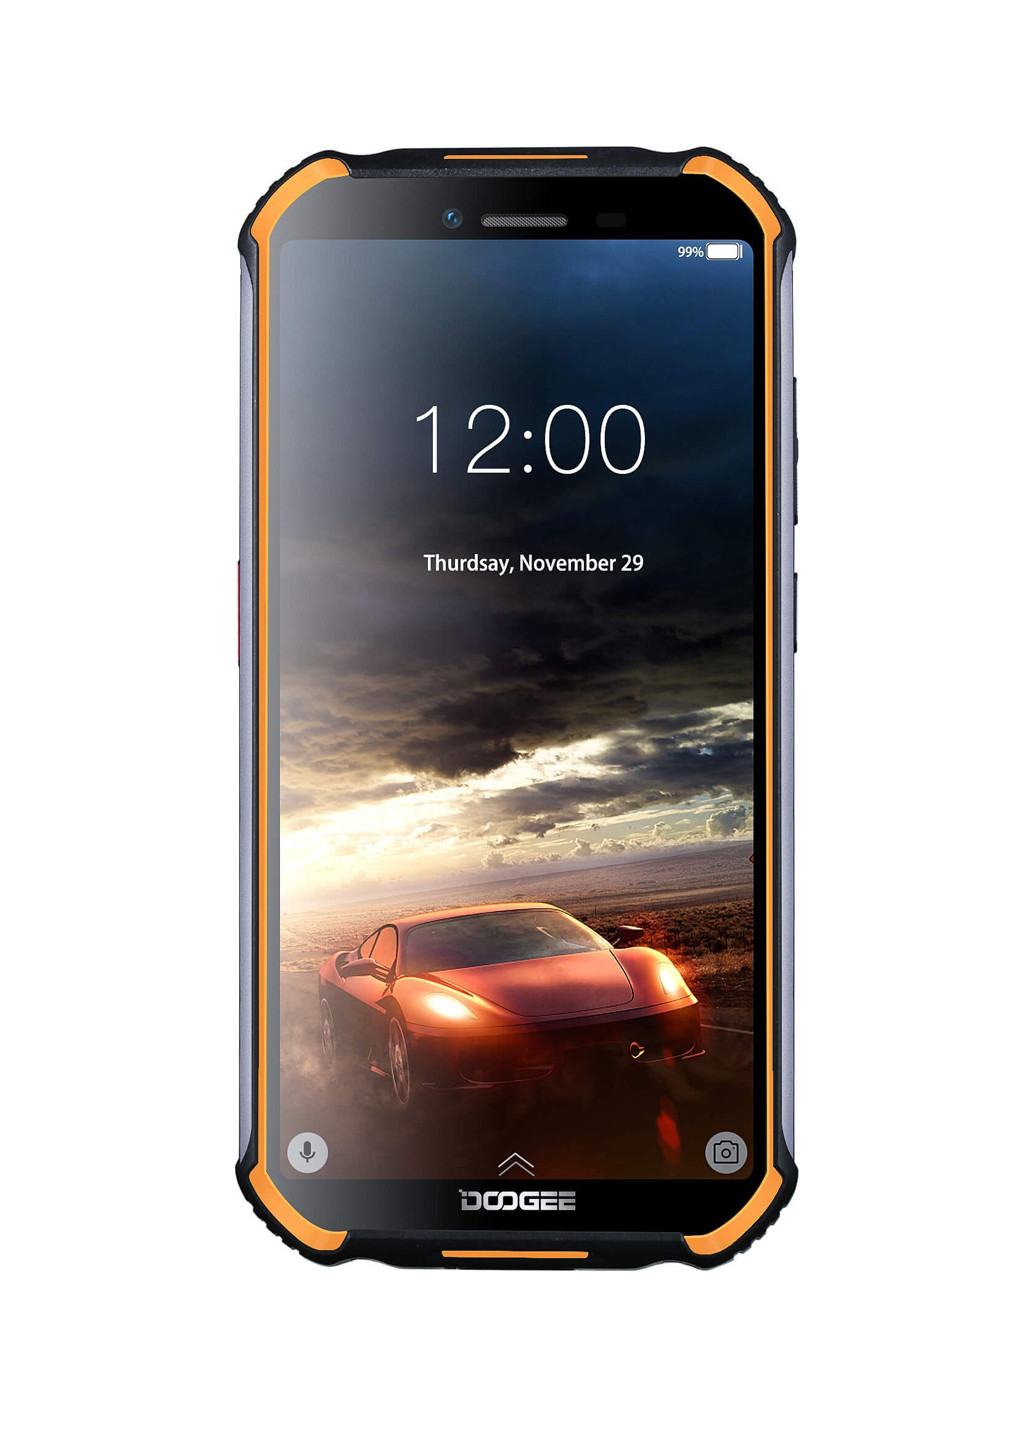 Смартфон S40 3 / 32GB Orange Doogee s40 3/32gb orange (155433455)